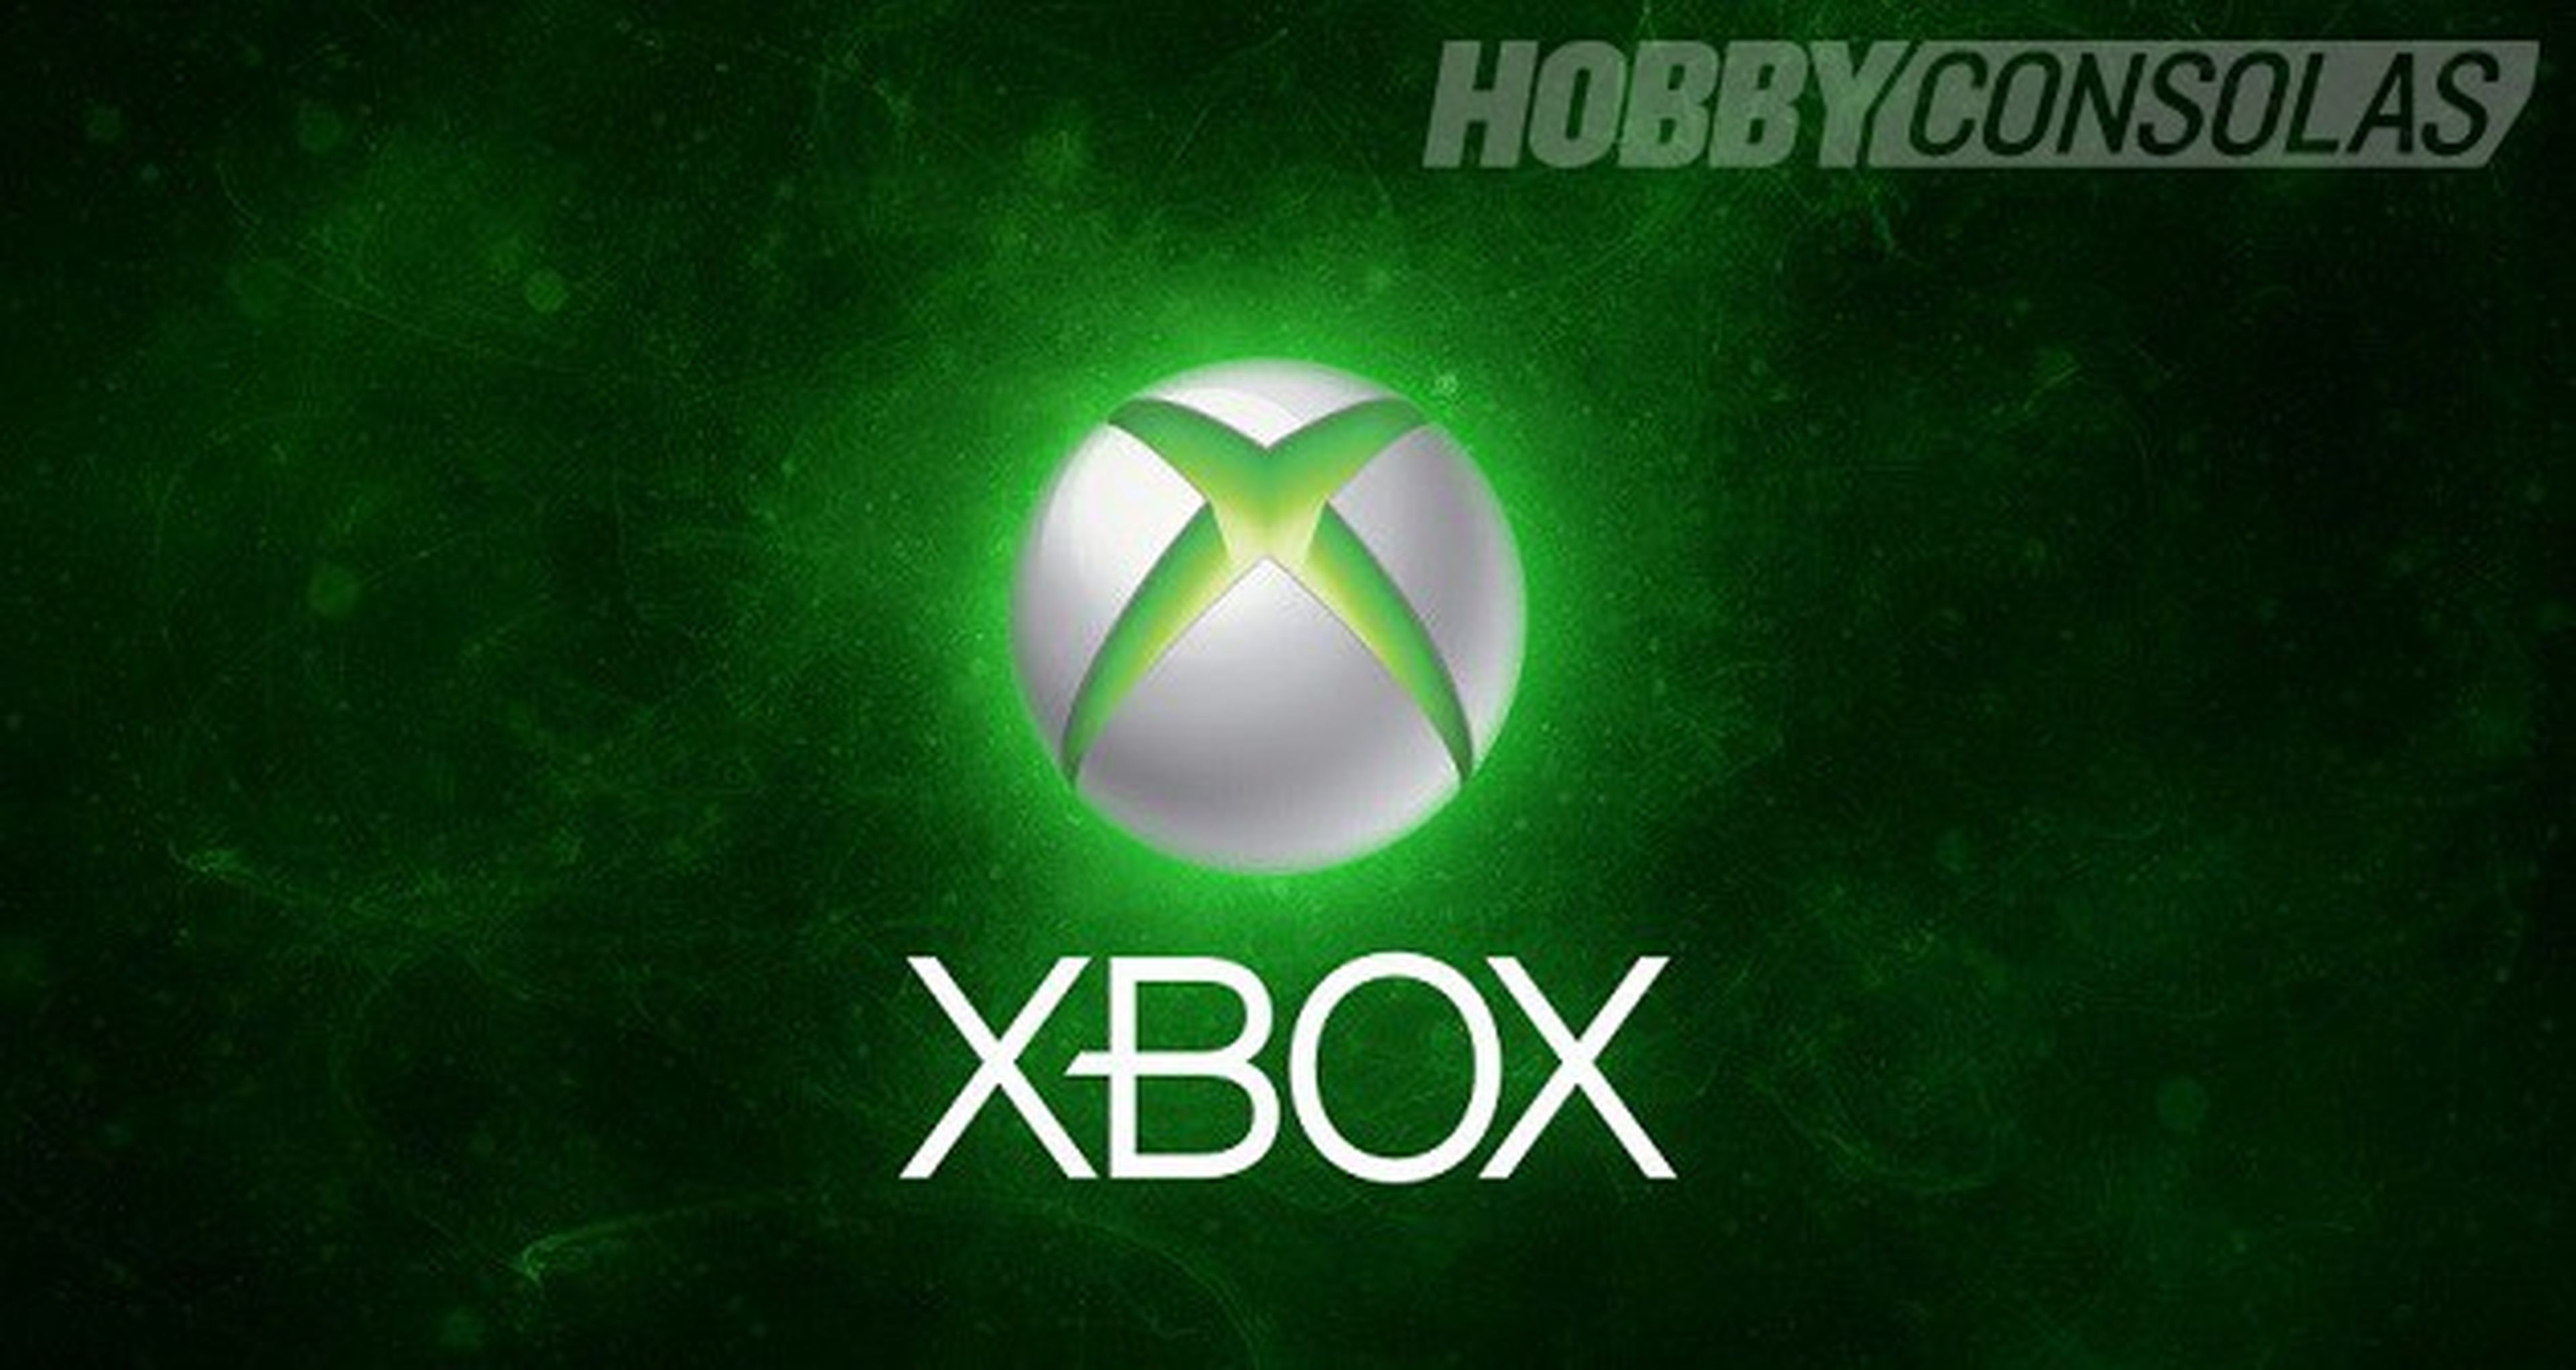 1,1 millones de Xbox distribuidas en los últimos 3 meses